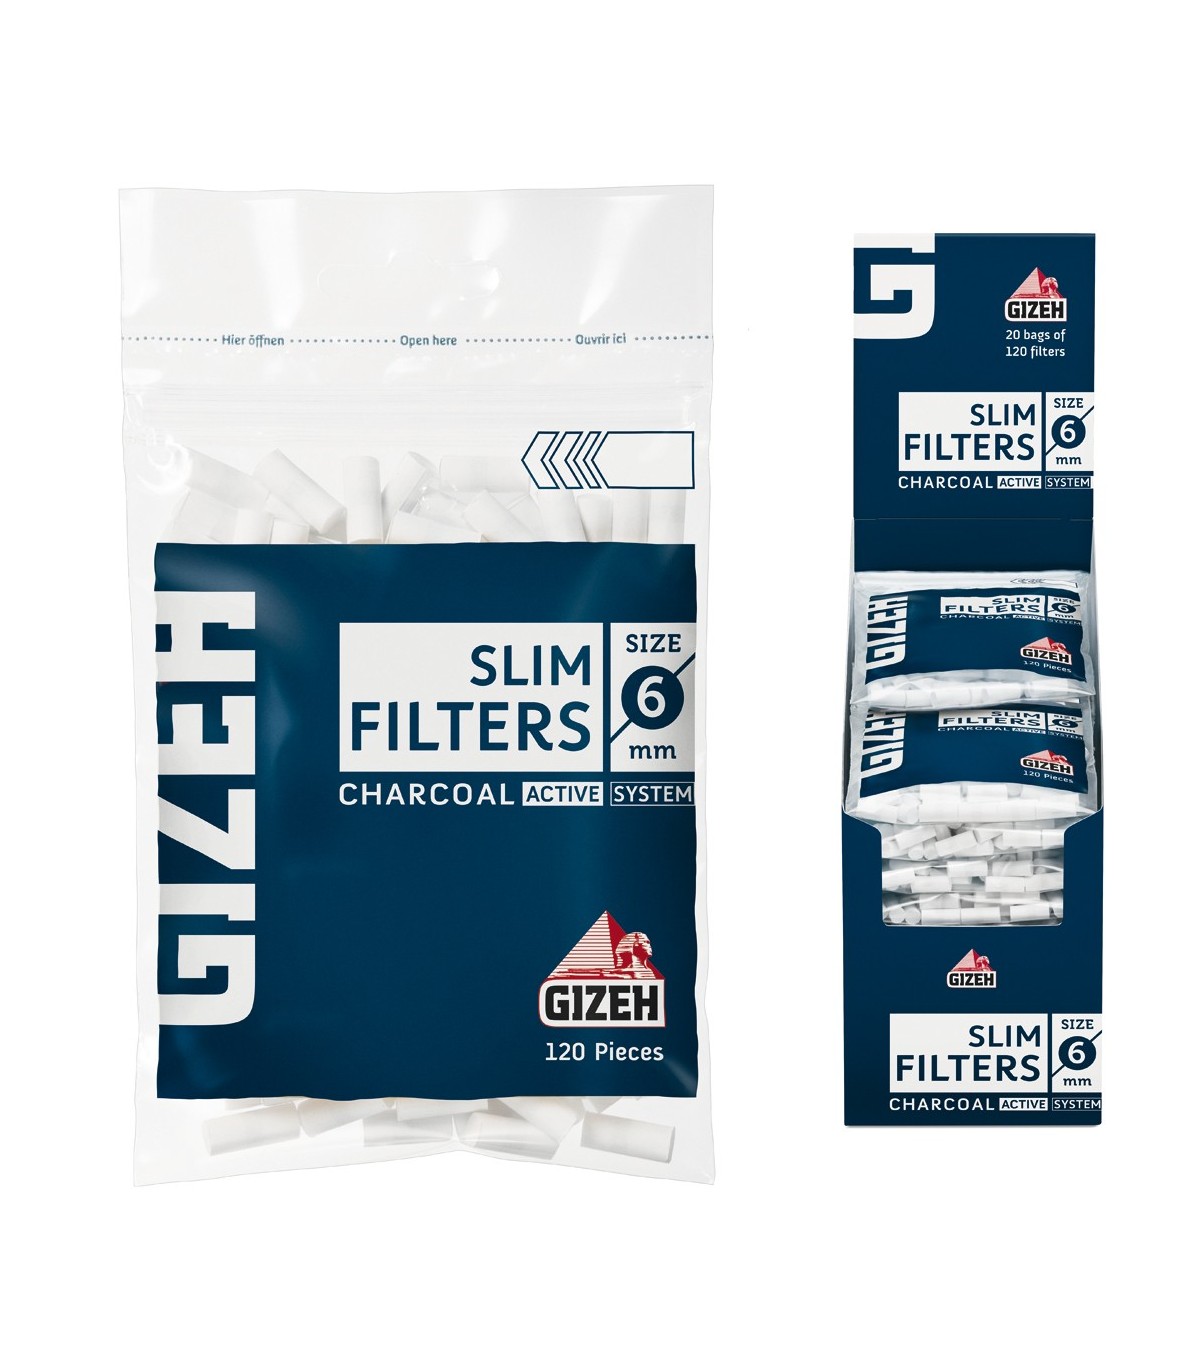 Filtri Gizeh 6mm carbone attivo conf. 20 BUSTE DA 120 FILTRI